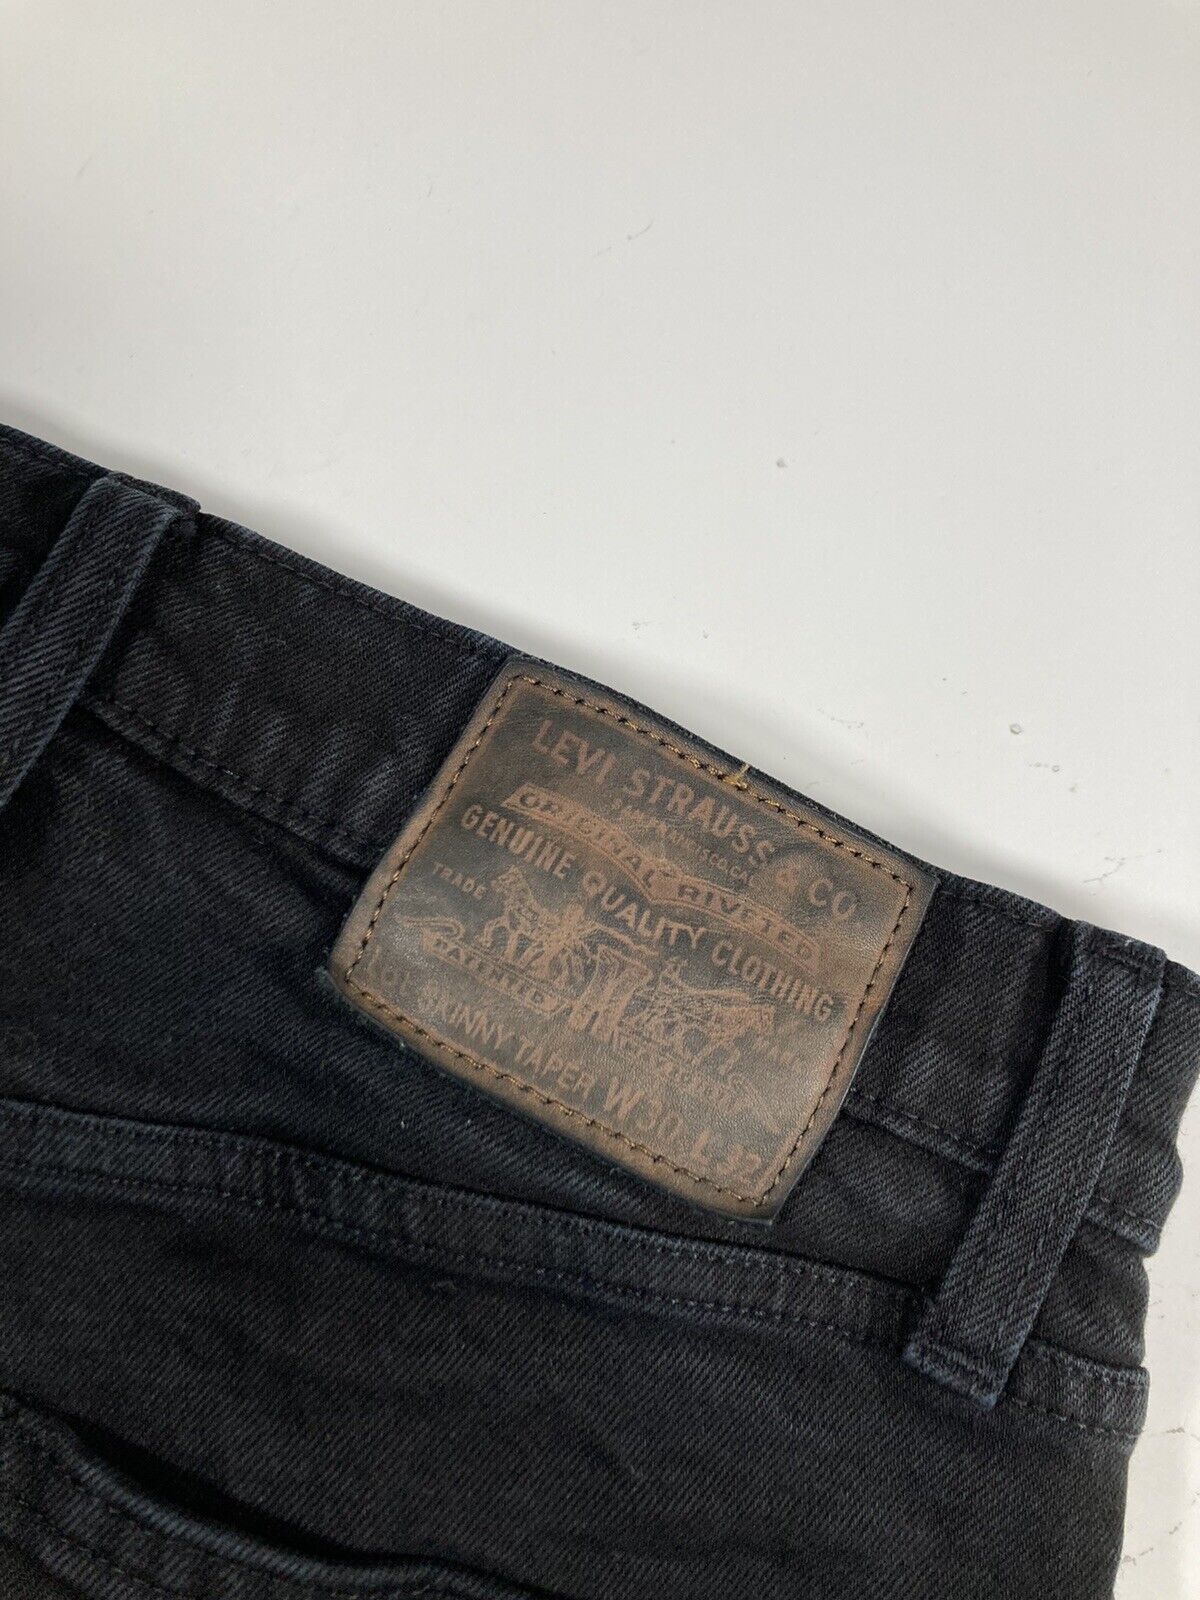 LEVI’S SKINNY TAPER Jeans - W30 L28 - Black - Gre… - image 7